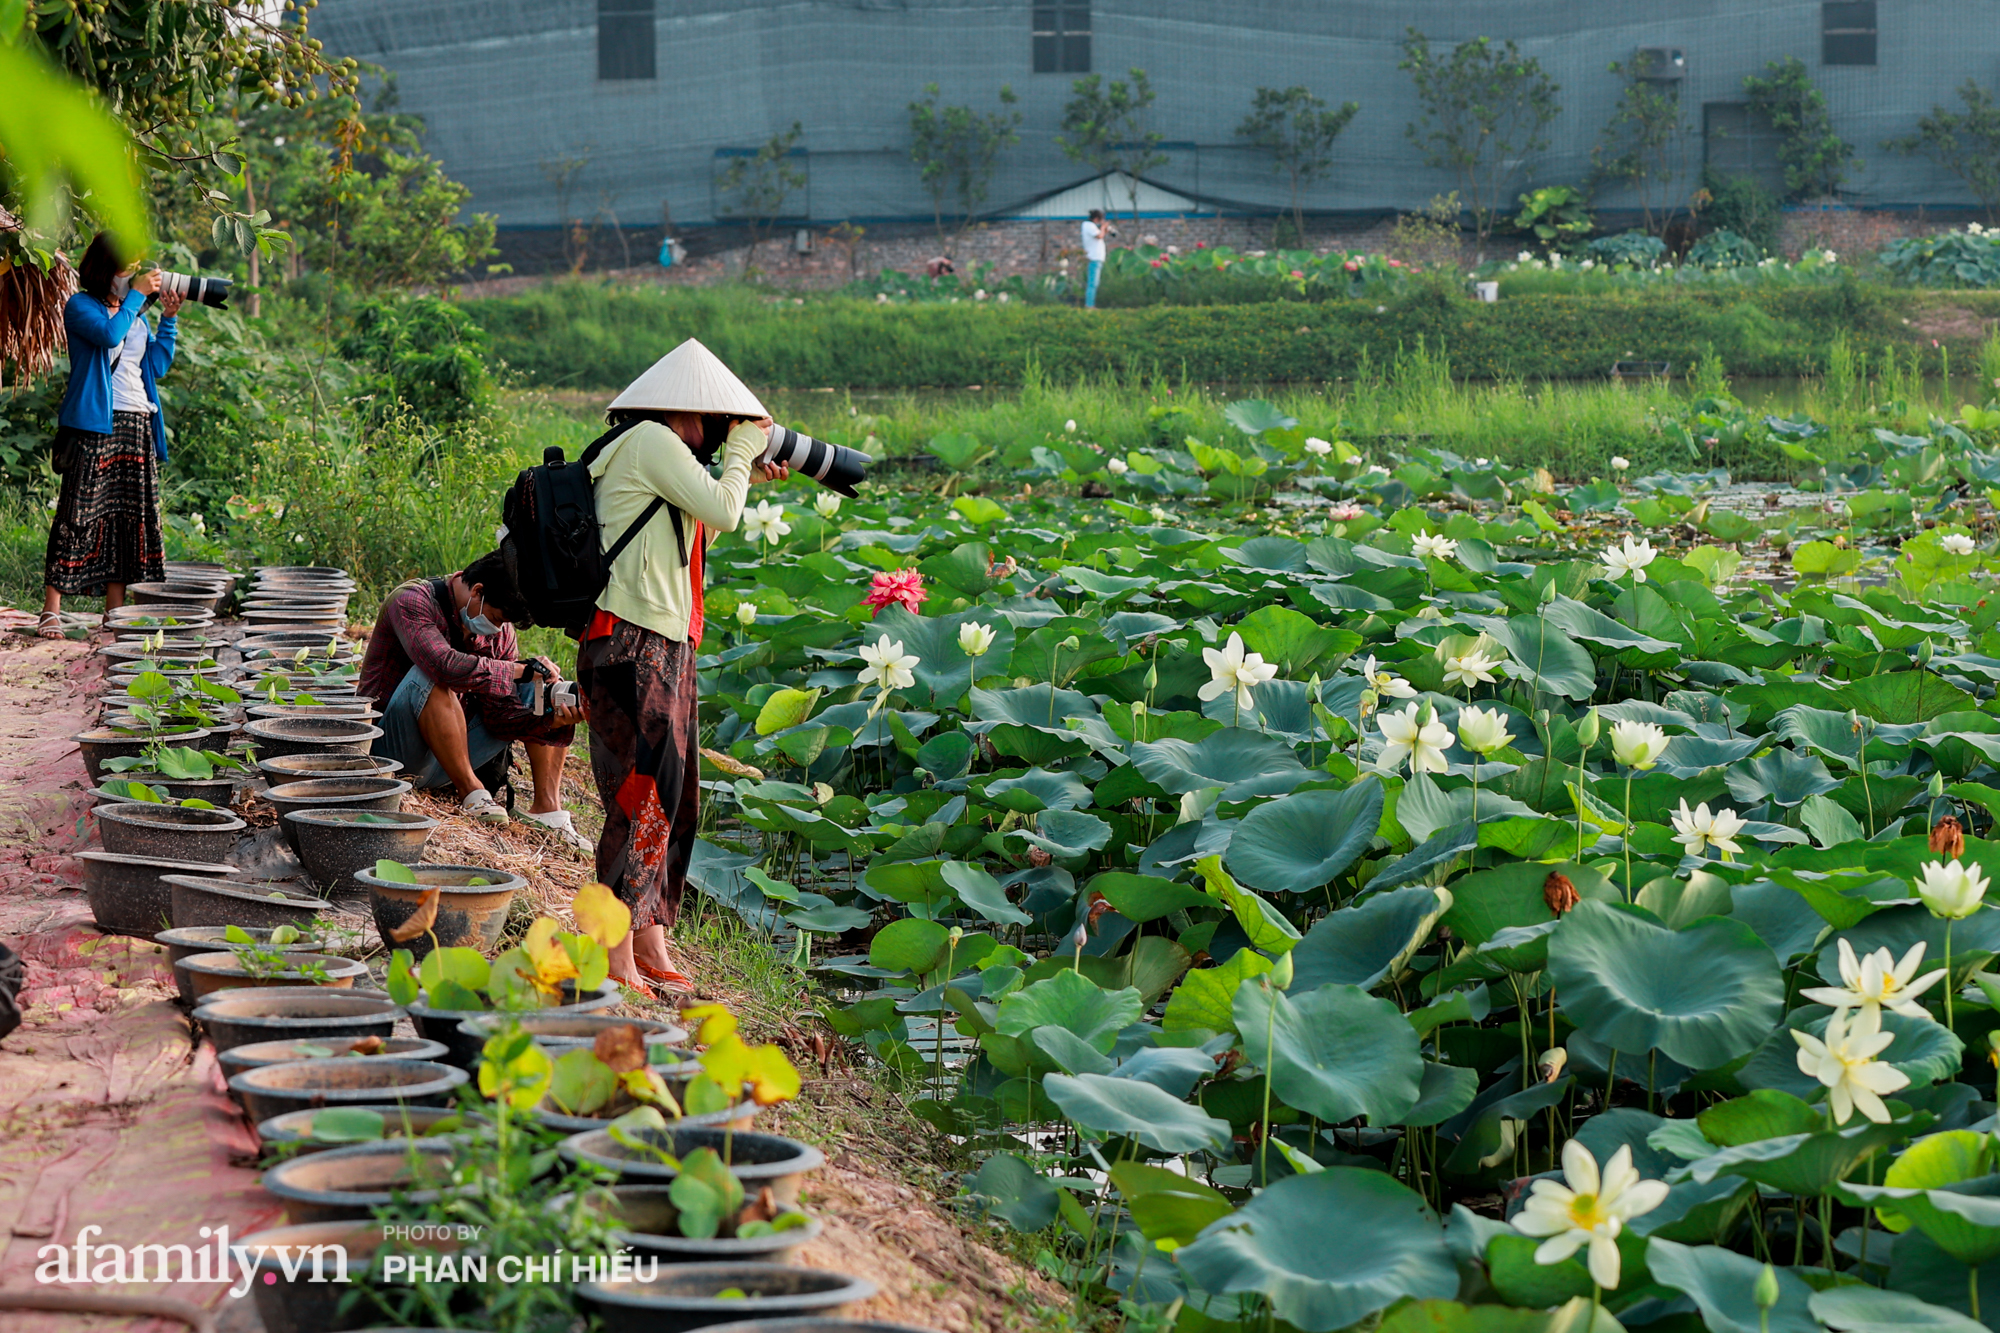 Ngợp với đầm sen nhiều loại nhất Việt Nam đang thi nhau đua nở, muốn hưởng trọn hương sắc phải cầu kỳ có mặt từ lúc sớm tinh mơ - Ảnh 14.